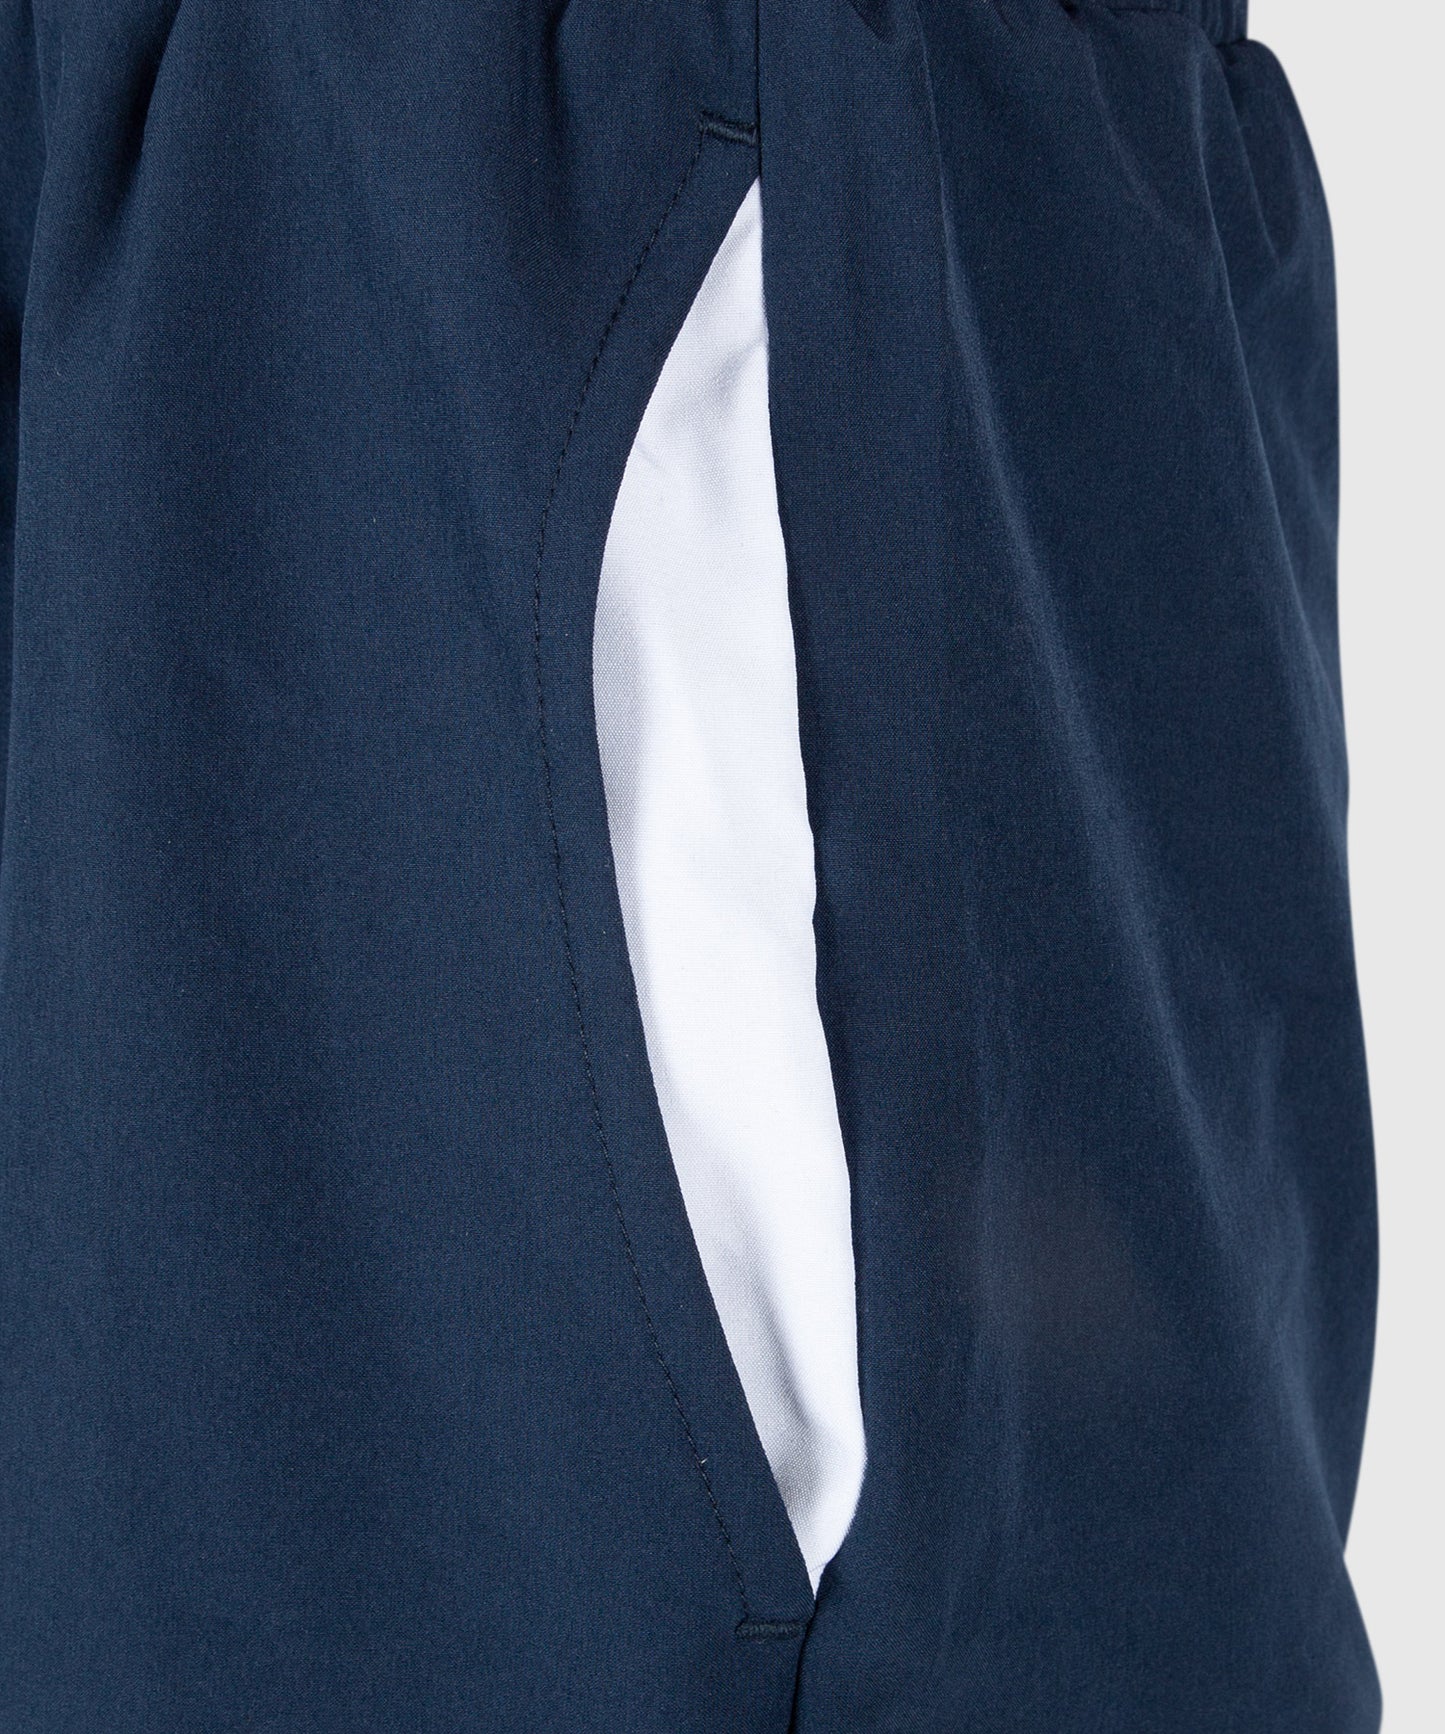 Pantalón corto de entrenamiento Venum Classic - Azul Marino